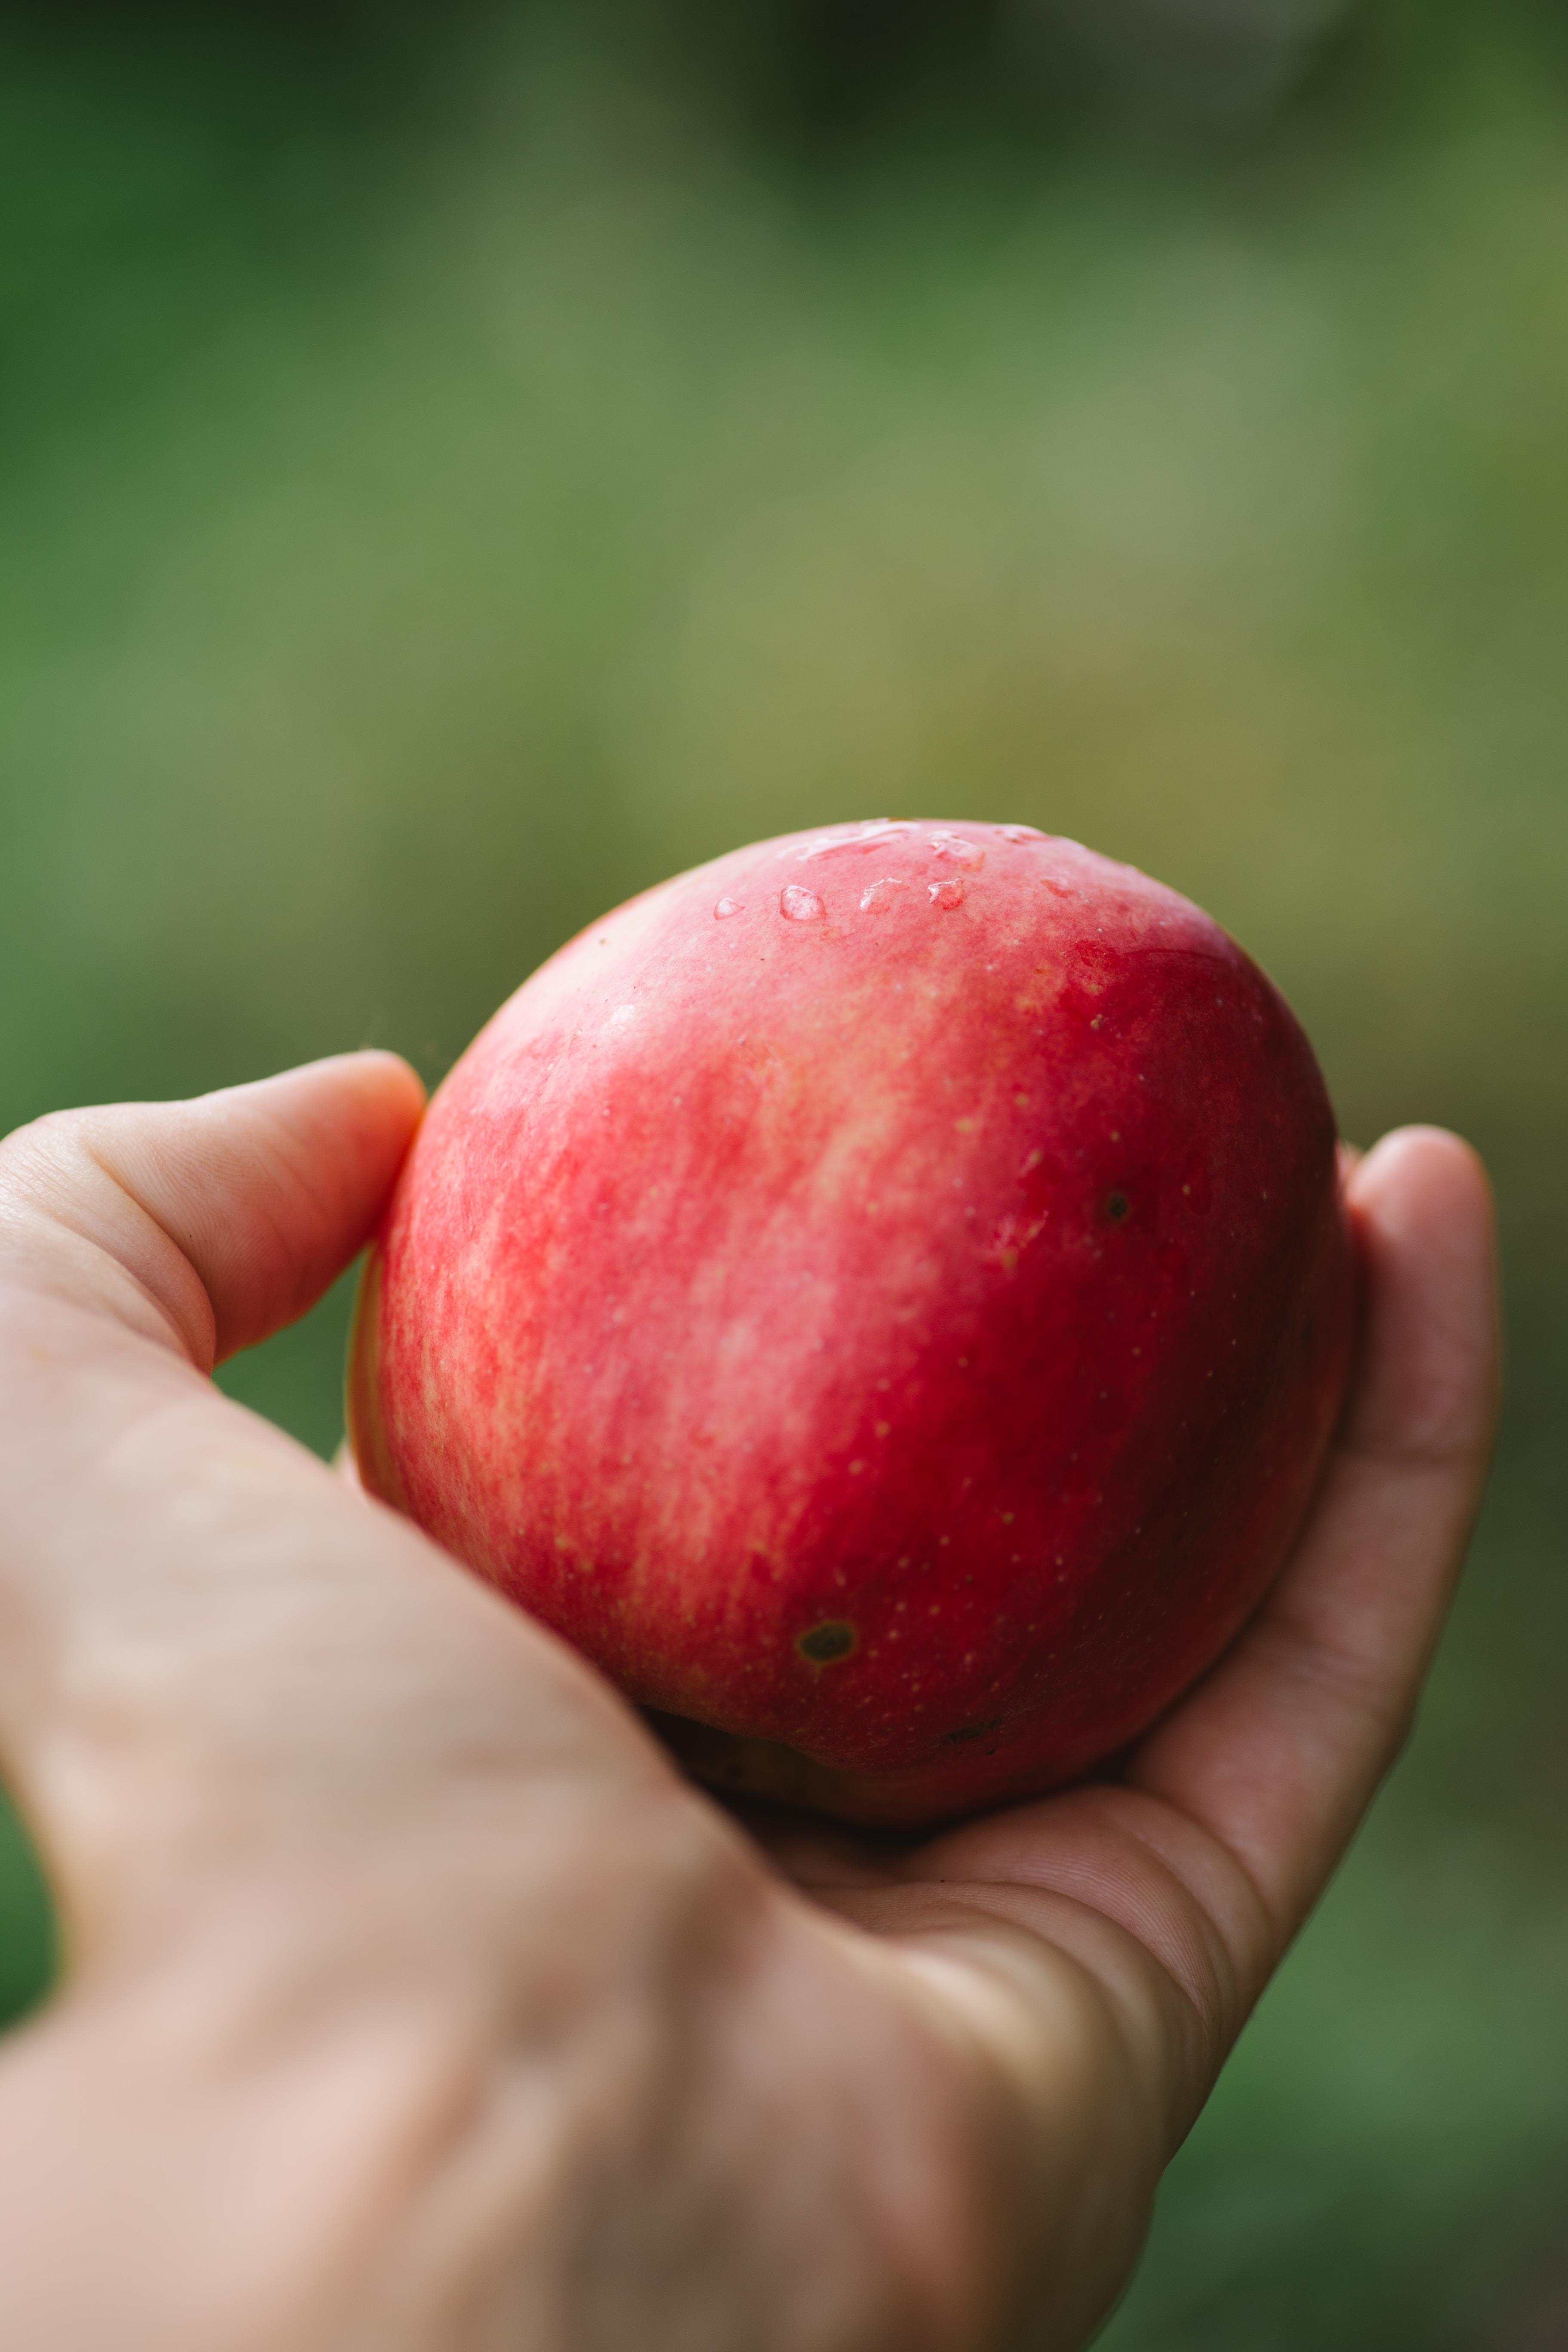 Jak pić ocet jabłkowy? Spożywanie octu jabłkowego dla zdrowia. Ocet jabłkowy – właściwości